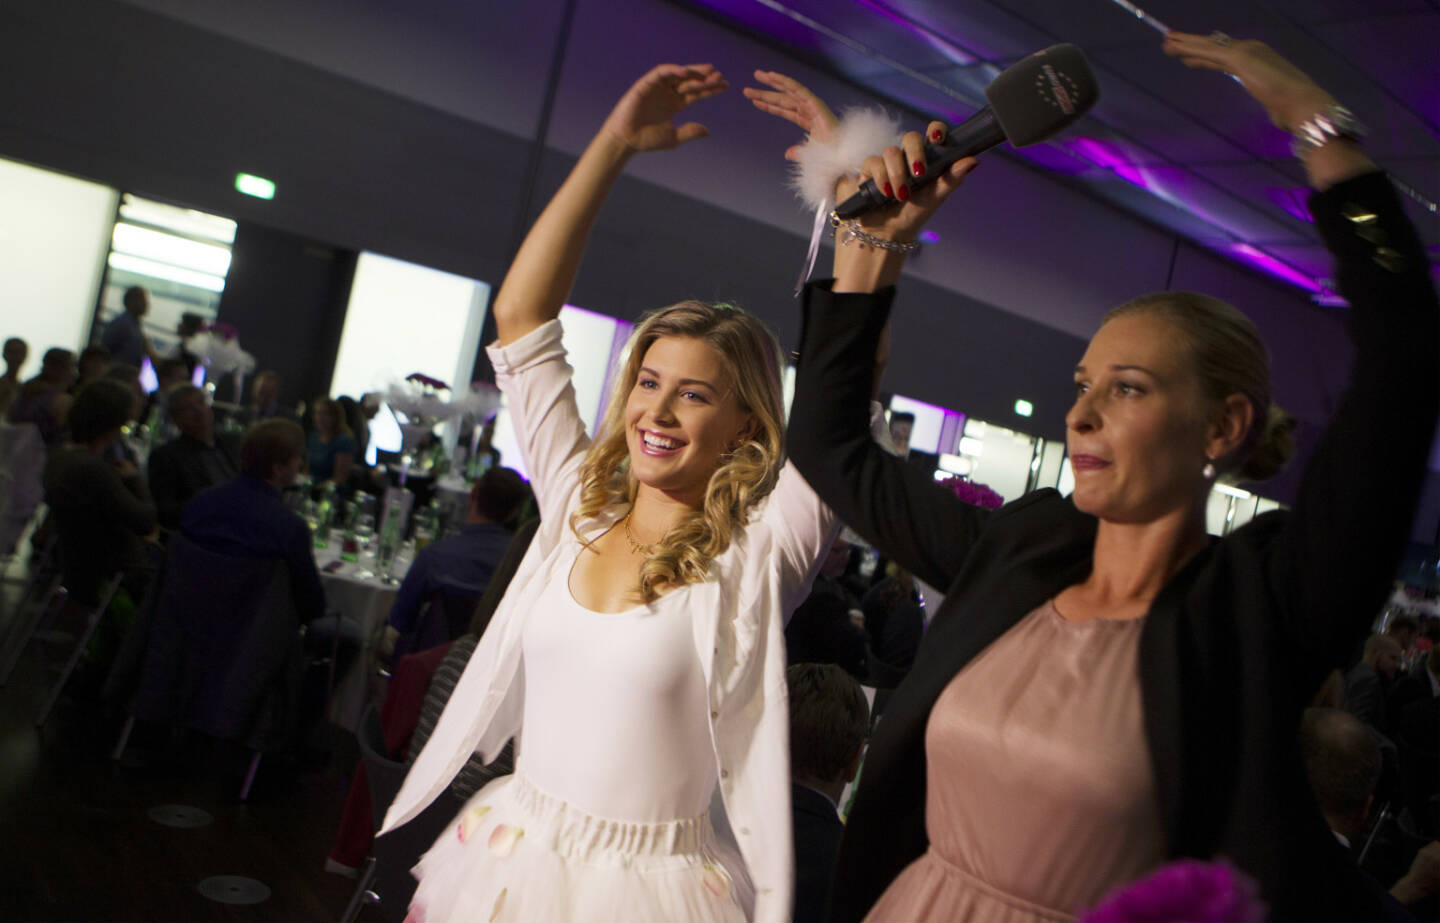 Eugenie Bouchard und Barbara Schett-Eagle bei der Players Party der Generali Ladies Linz /WTA TourPhoto: GEPA pictures/ Matthias Hauer